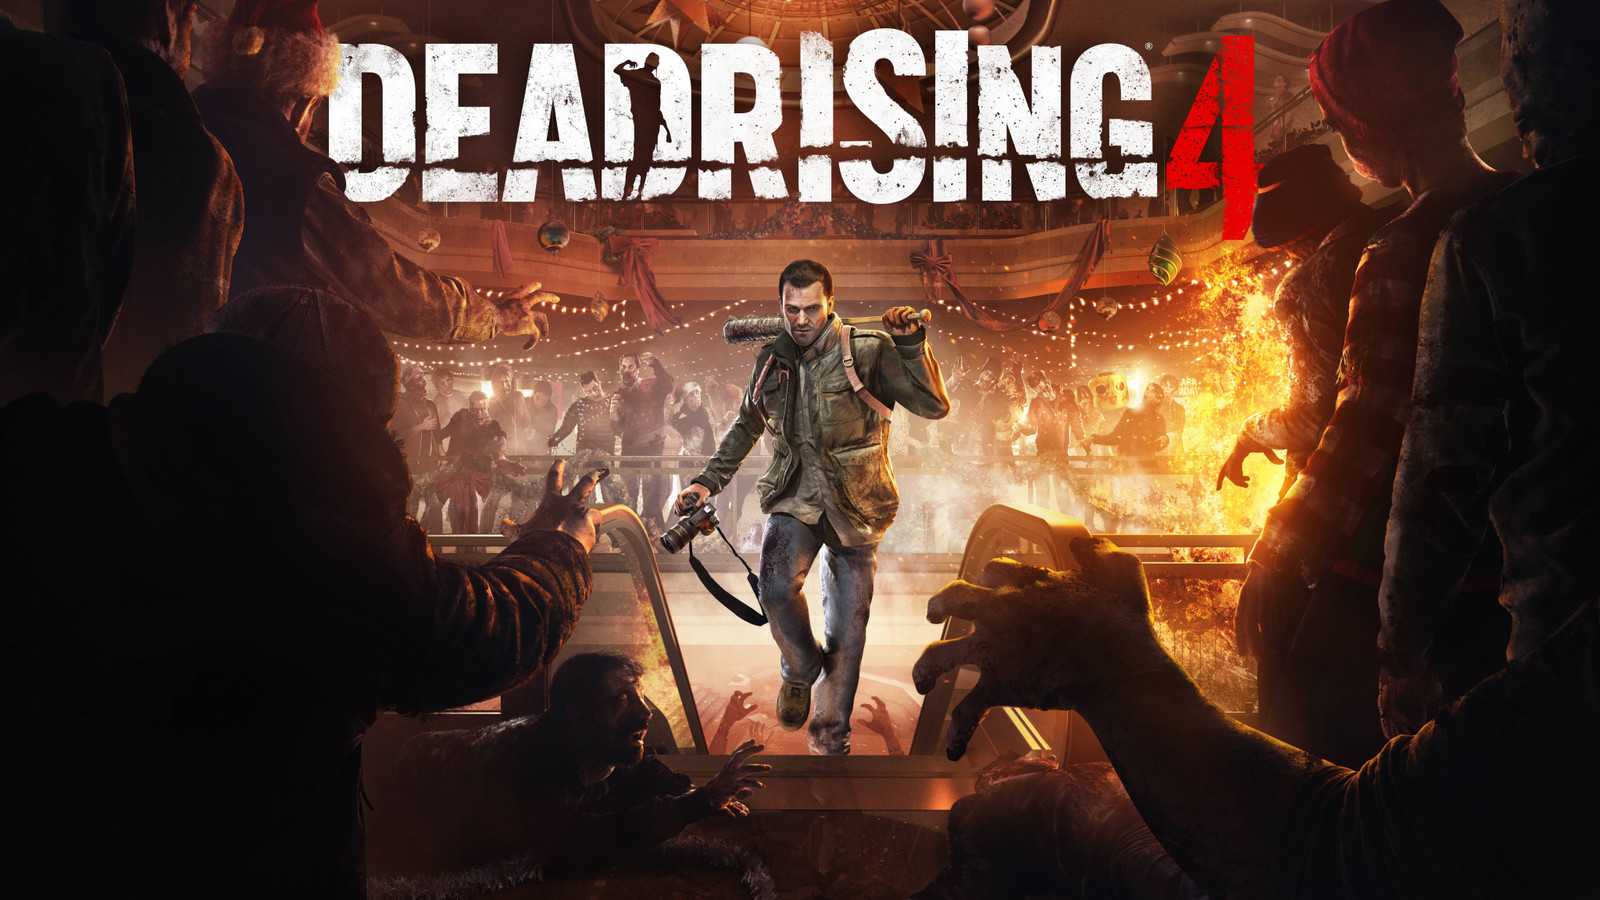 Dead Rising 4: Pacotão do Frank para PS4 - Capcom